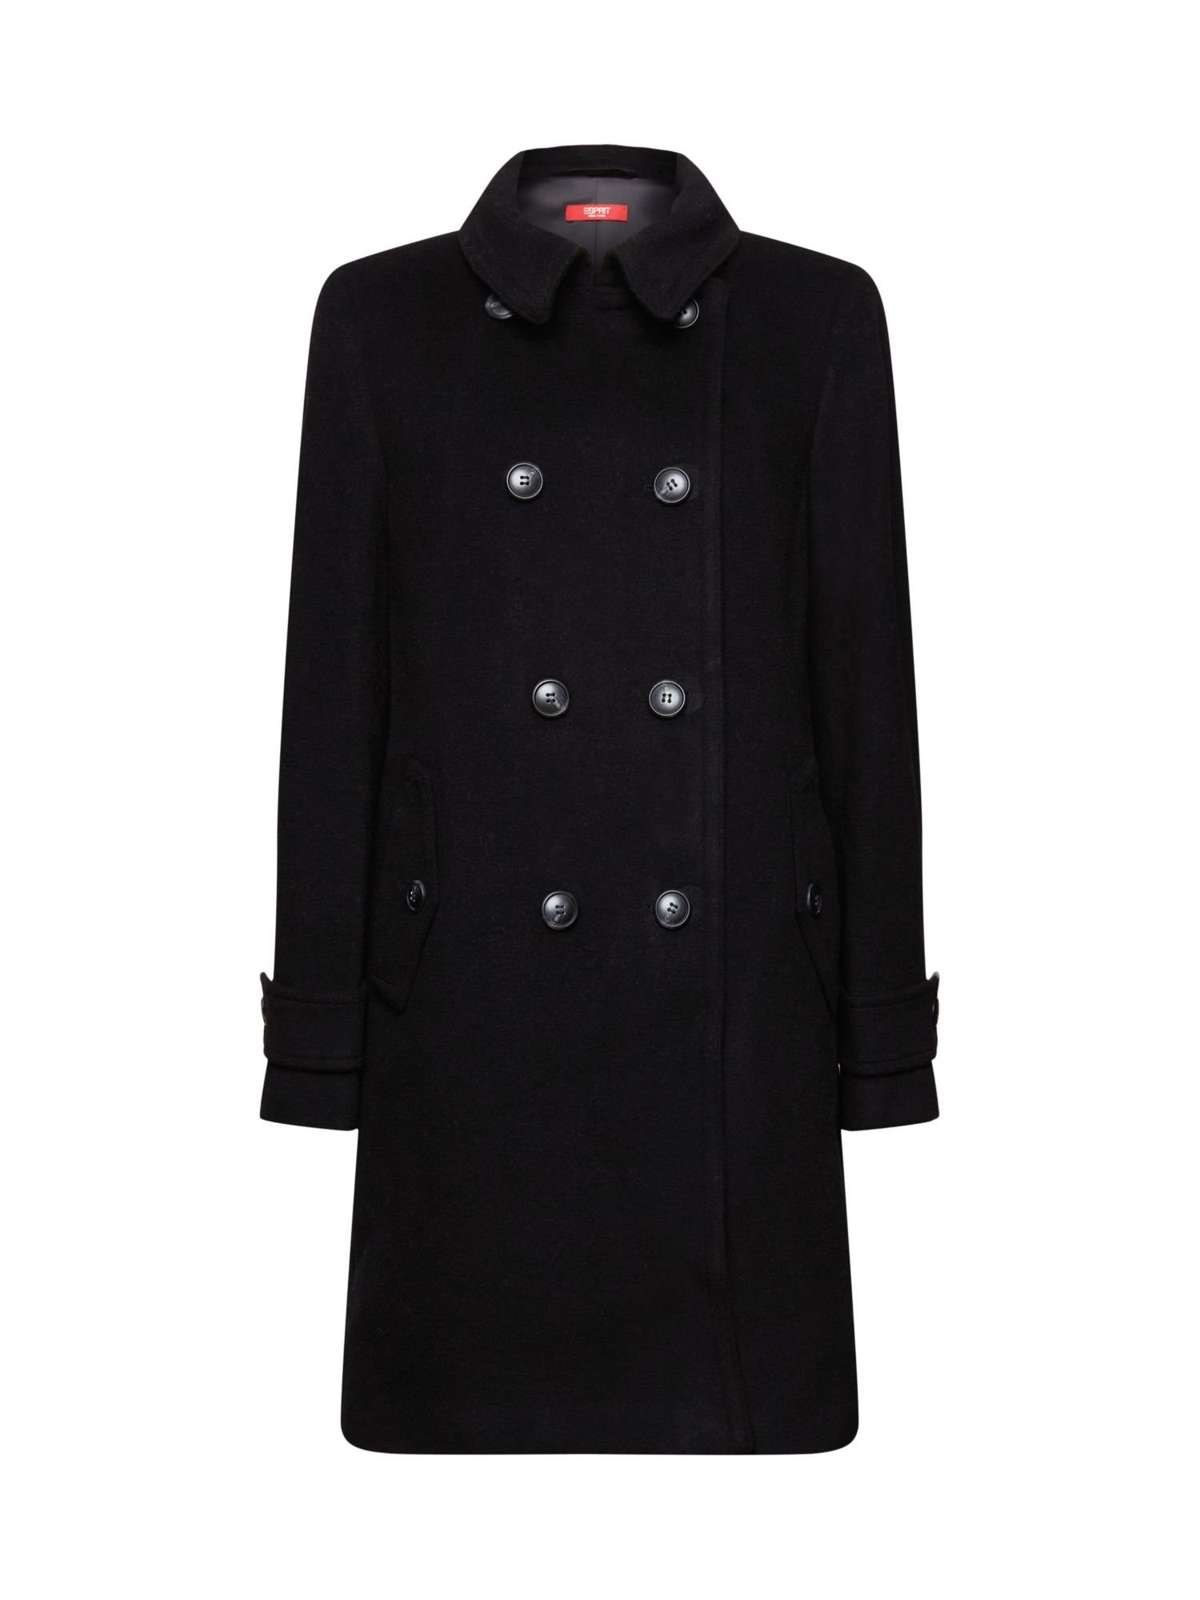 Пальто из переработанной шерсти: пальто из смеси шерсти с кашемиром.